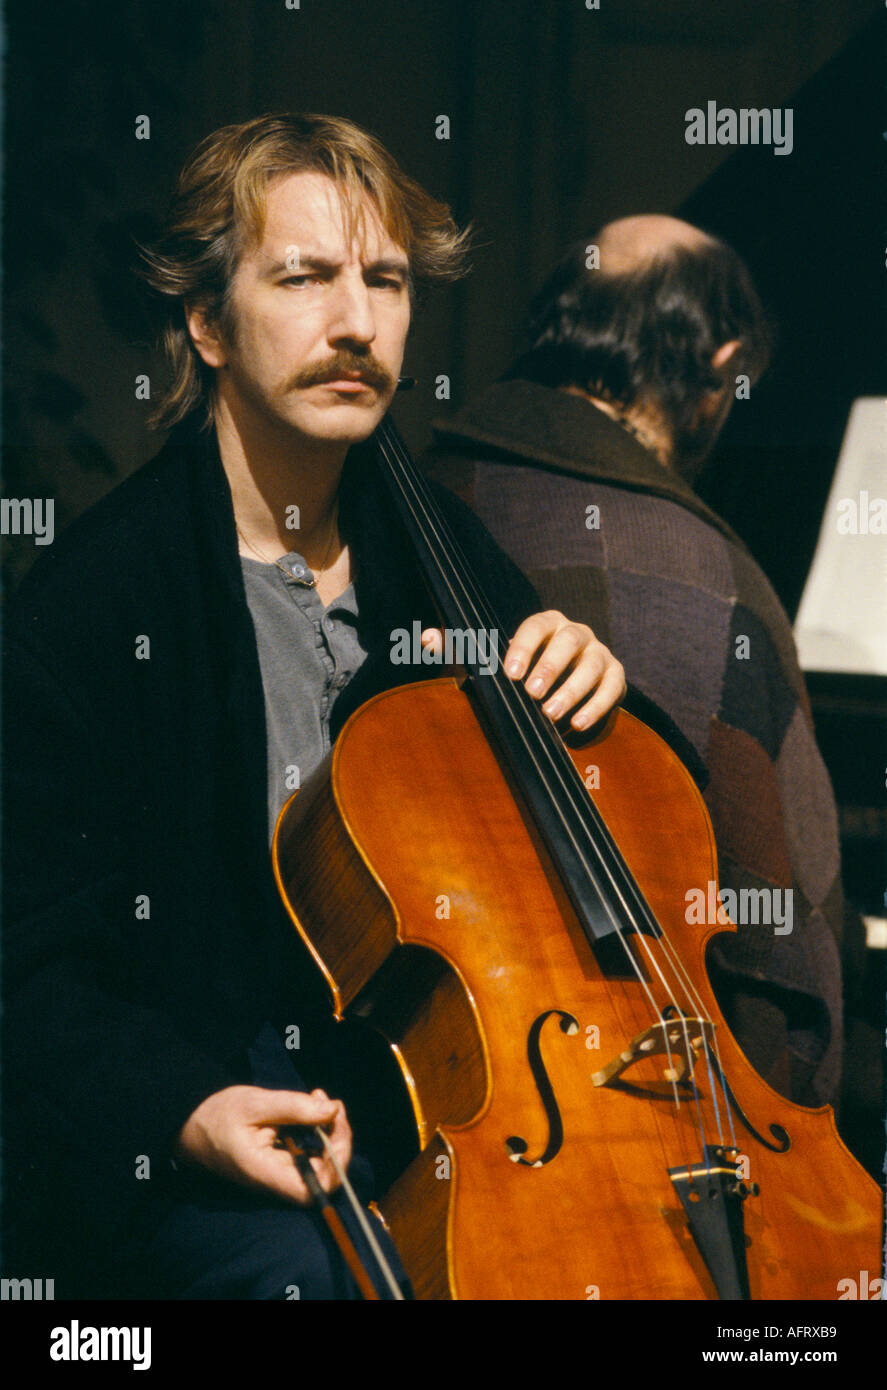 Alan Rickman attore britannico che suona il violoncello sul set del film Truly Madly profondamente, Londra, Inghilterra 21st marzo 1990. OMERO SYKES Foto Stock